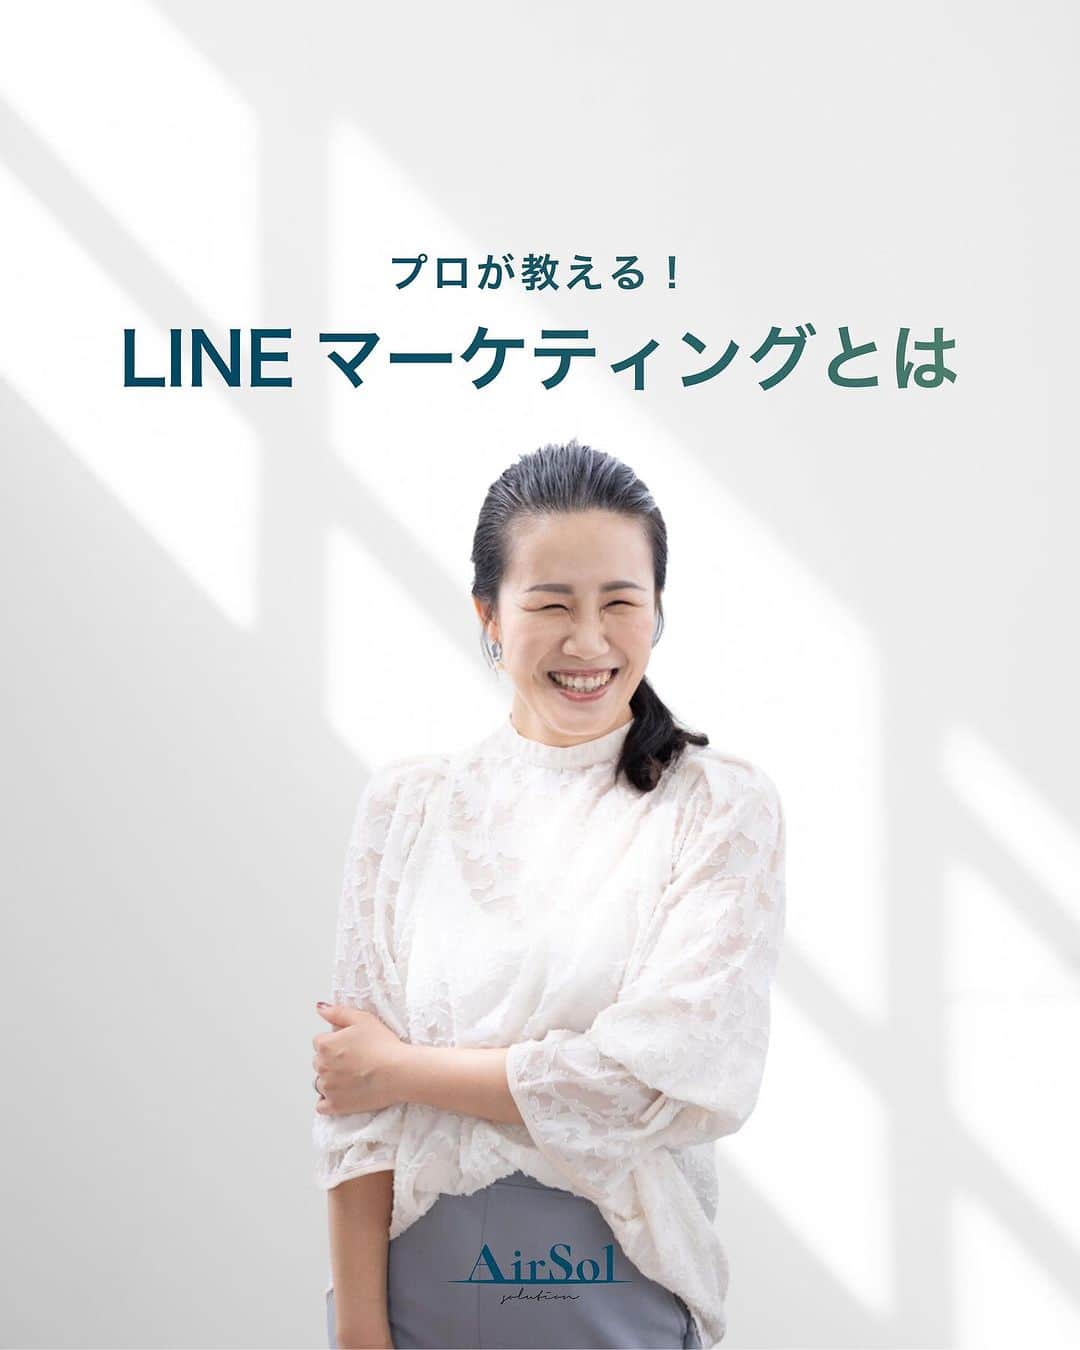 AirSolのインスタグラム：「《プロが教える！LINEマーケティングとは》 こんにちは！AirSolです。 @airsol_jp  みなさんは「LINEマーケティング」で具体的に何ができるか、ご存知でしょうか。  LINEは、日本国内で月間アクティブユーザー数8,800万人以上（2022年12月時点）を誇る、日本最大のコミュニケーションアプリ。 テキストメッセージ・音声通話・ビデオ通話・写真や動画の共有など、多様なコミュニケーション手段を提供しています。  ユーザーの年齢層は幅広く、女性ユーザーが多いことも特徴。そのため、LINEを活用することで、ターゲットユーザーに効率的にリーチし、マーケティング効果を高めることができるのです。  LINEマーケティングの施策例をご紹介します。  １，友だち登録キャンペーン ２，クーポン配信 ３，セール情報の告知 ４，アンケート調査 ５，リピーター向けの特別クーポン ６，スタンププレゼント ７，ライブ配信 ８，チャットボット ９，ニュースレター １０，広告配信  上記を組み合わせたり、他のSNSを介して活用することも可能で、LINEマーケティングの可能性はこれからますます広がると期待できます。  ターゲットユーザーを明確にし、そのユーザーにささるコンテンツを作成することで、より効果的なマーケティングを展開することができます。 最近LINEのプランが変更し値上げが発表されたので、ターゲットごとに配信設定を変えないととんでもない金額になってしまうことも！  年齢・性別・地域・購入履歴等細かくセグメントを設定でき、さらに広告配信にも活用できるLINE。 LINE運用にお困りの方は、私たちAirSolにご相談ください！  #LINEマーケティング #クーポン配信#アンケート調査#ライブ配信#ニュースレター #AirSol#エアソル#snsマーケティング」